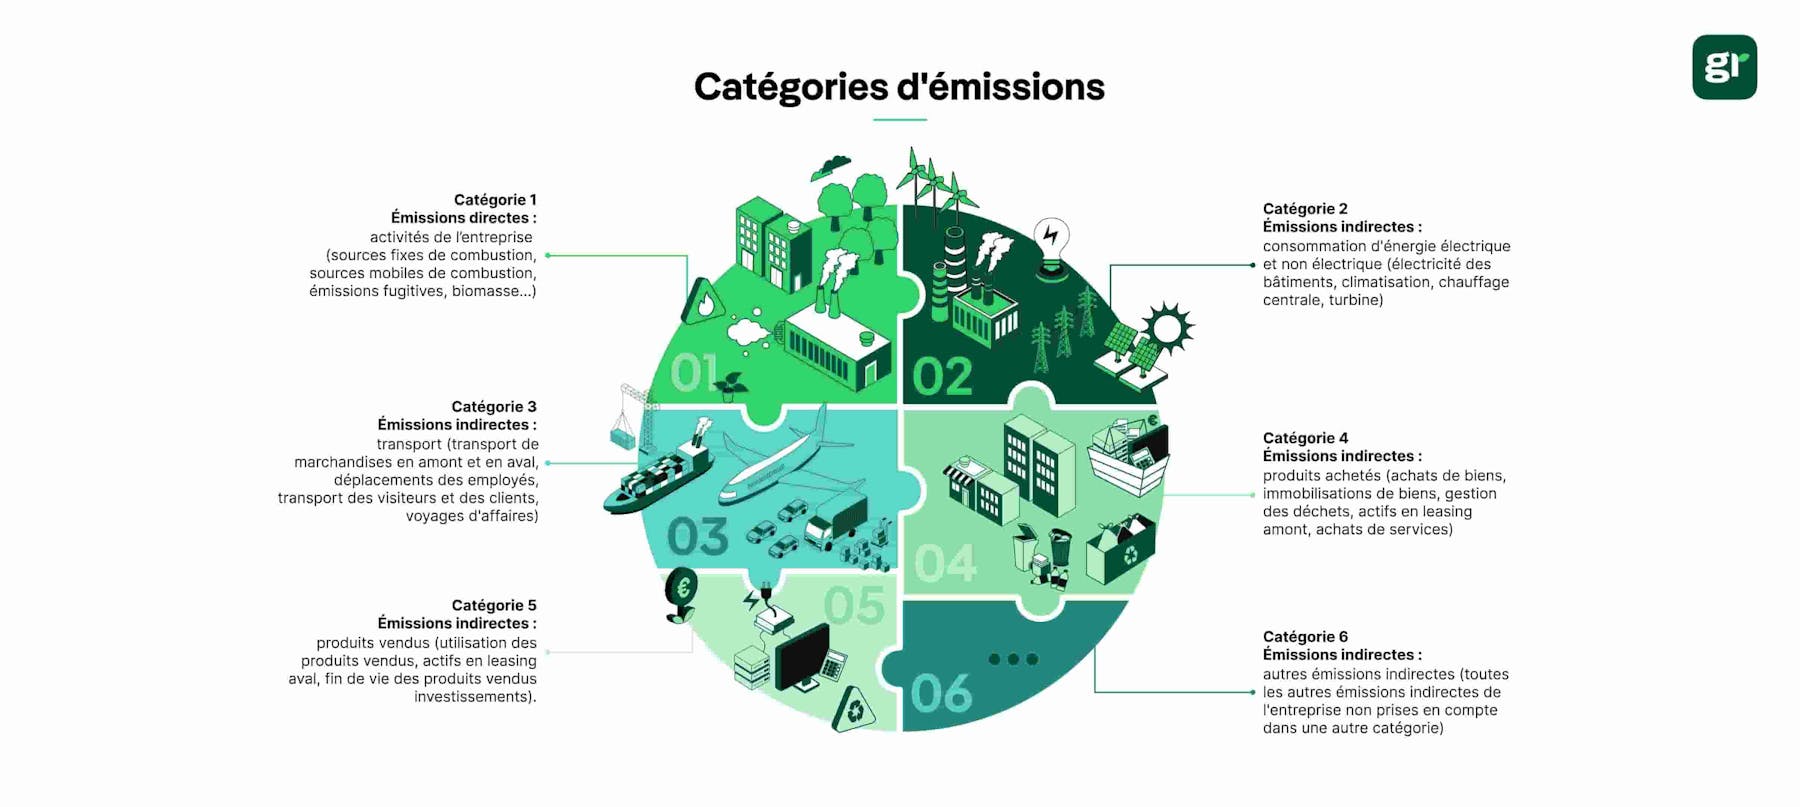 infographie catégories d'emissions